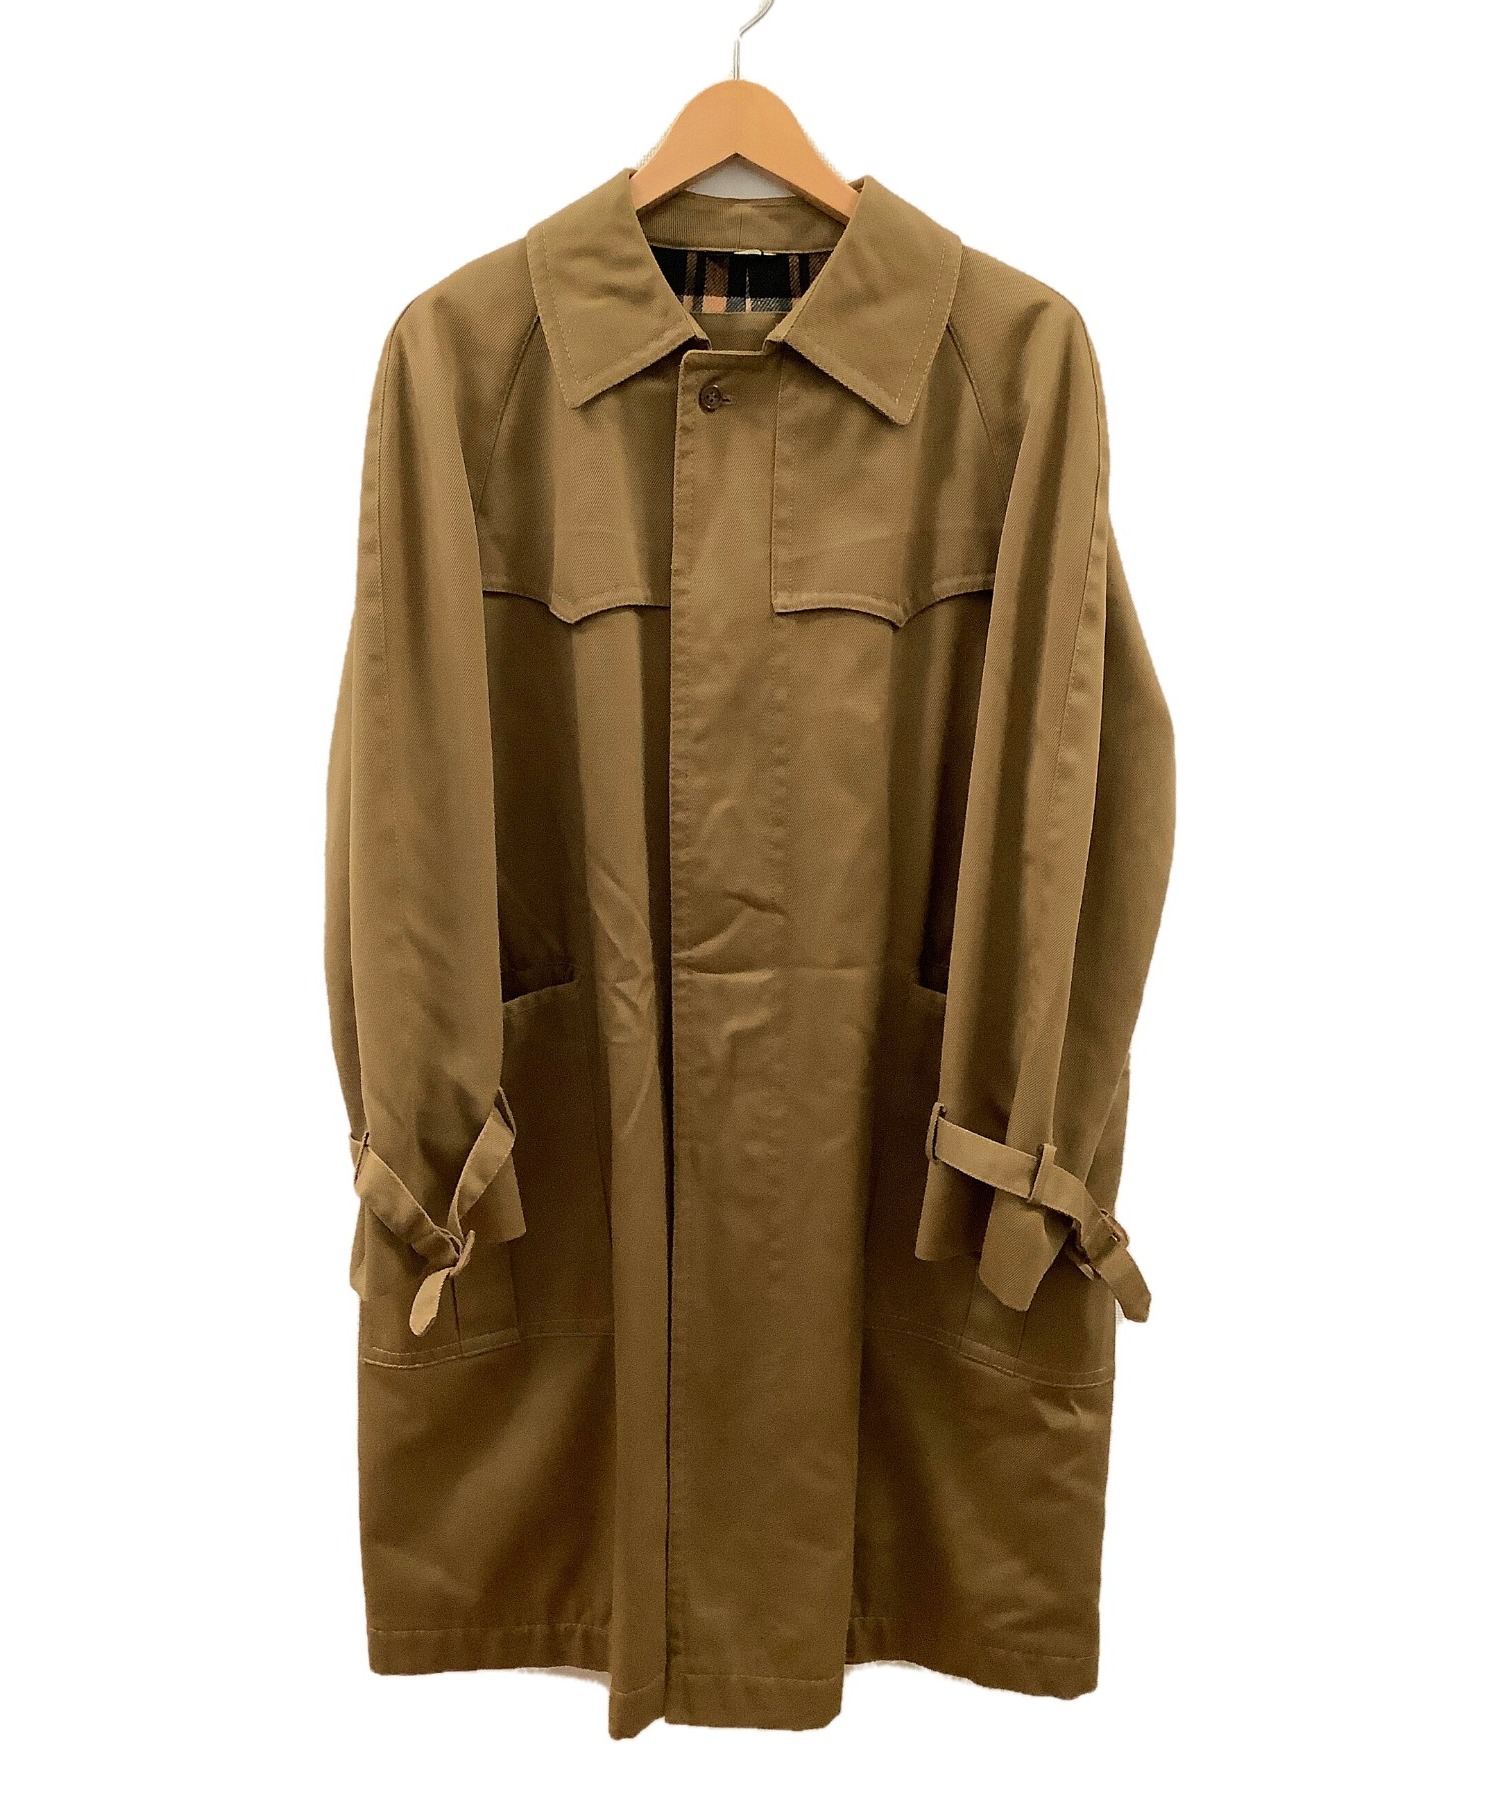 ブランド マクレガー コート サイズ9 M レディースの通販 by ブラン